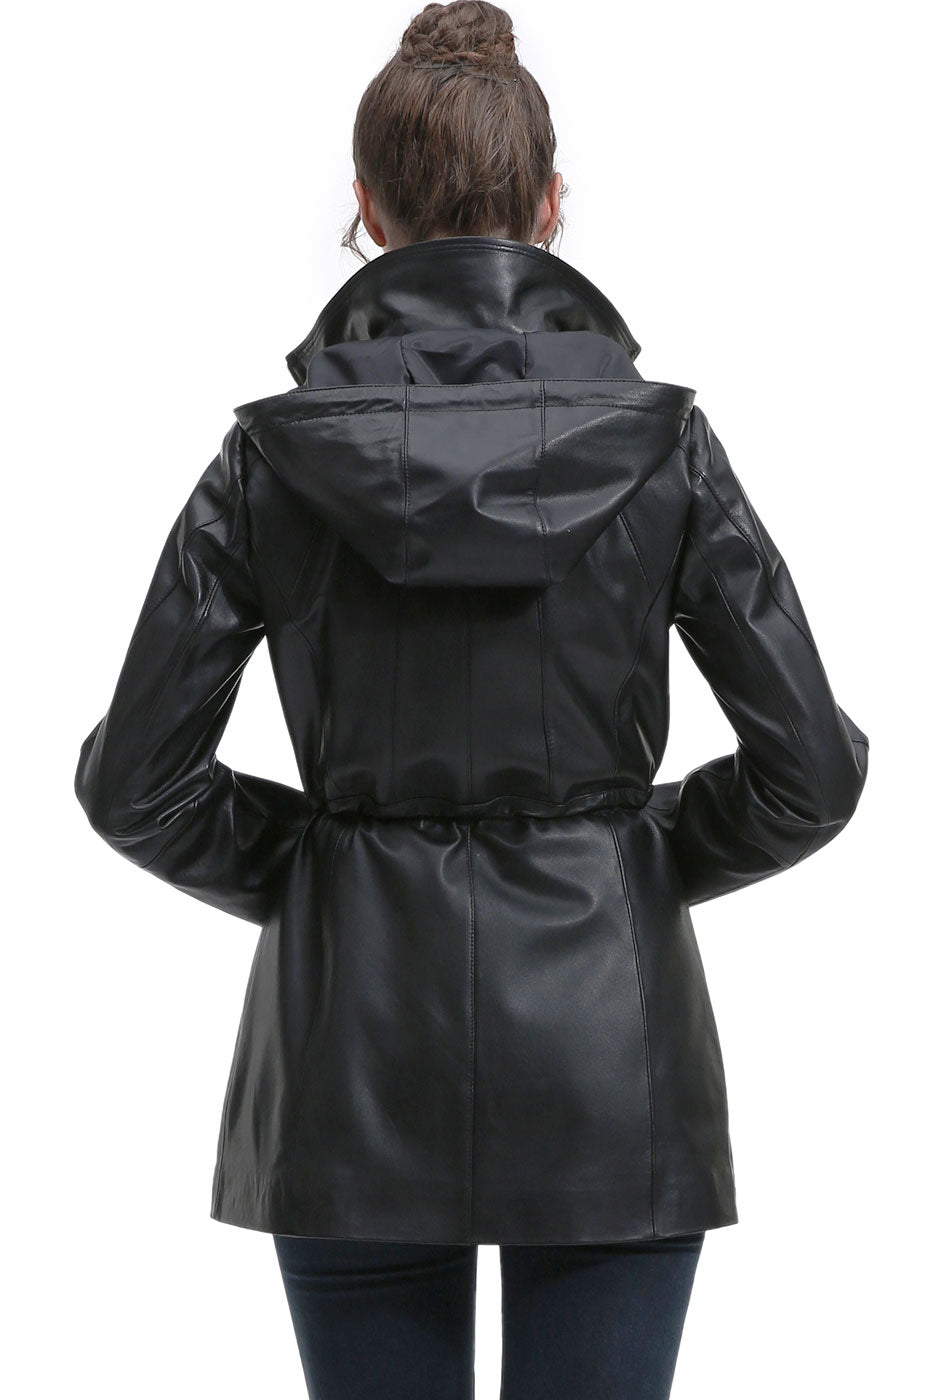 BGSD Women Elena Lambskin Leather Parka Coat